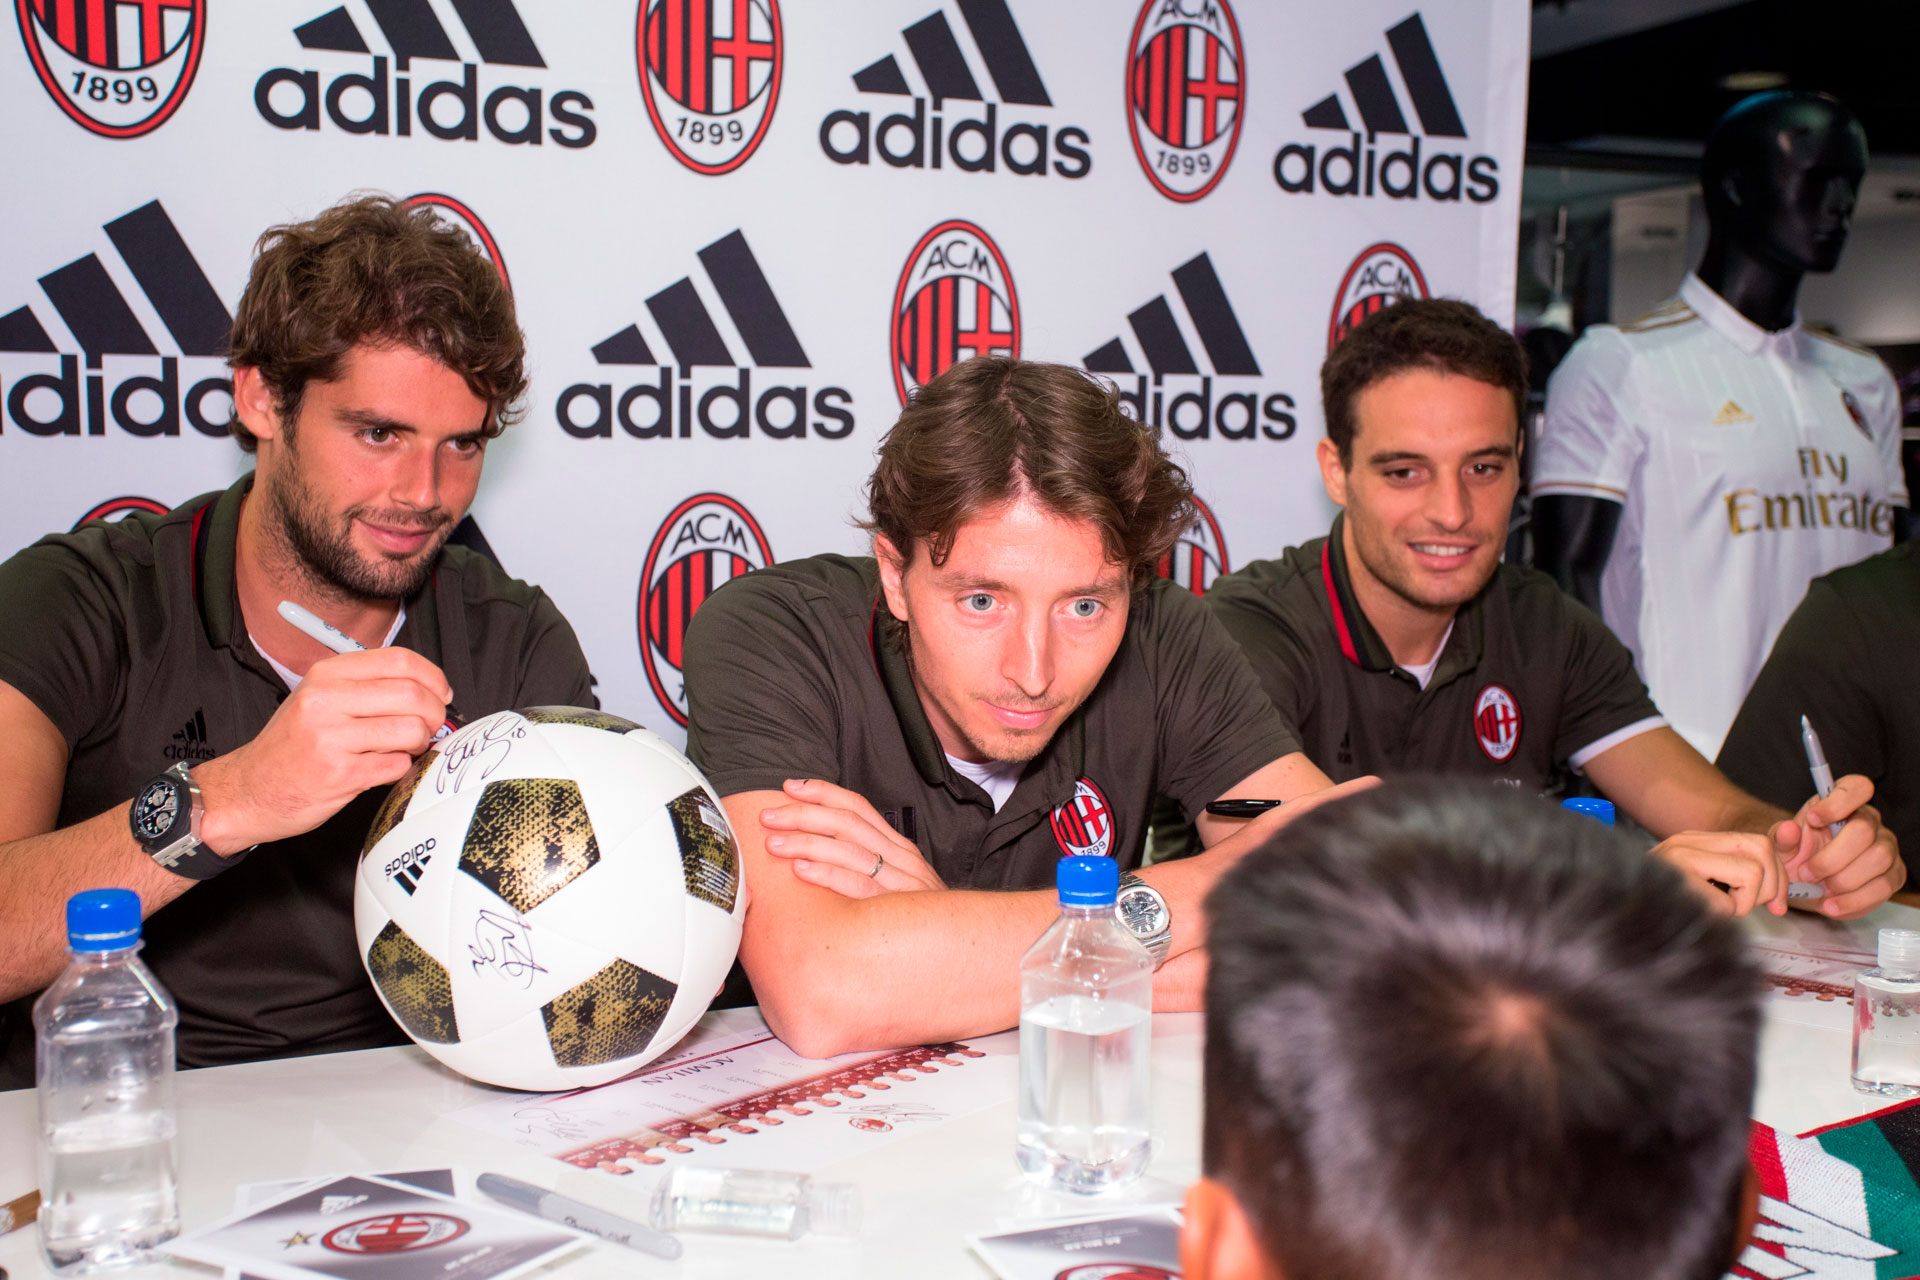 AC Milan Team